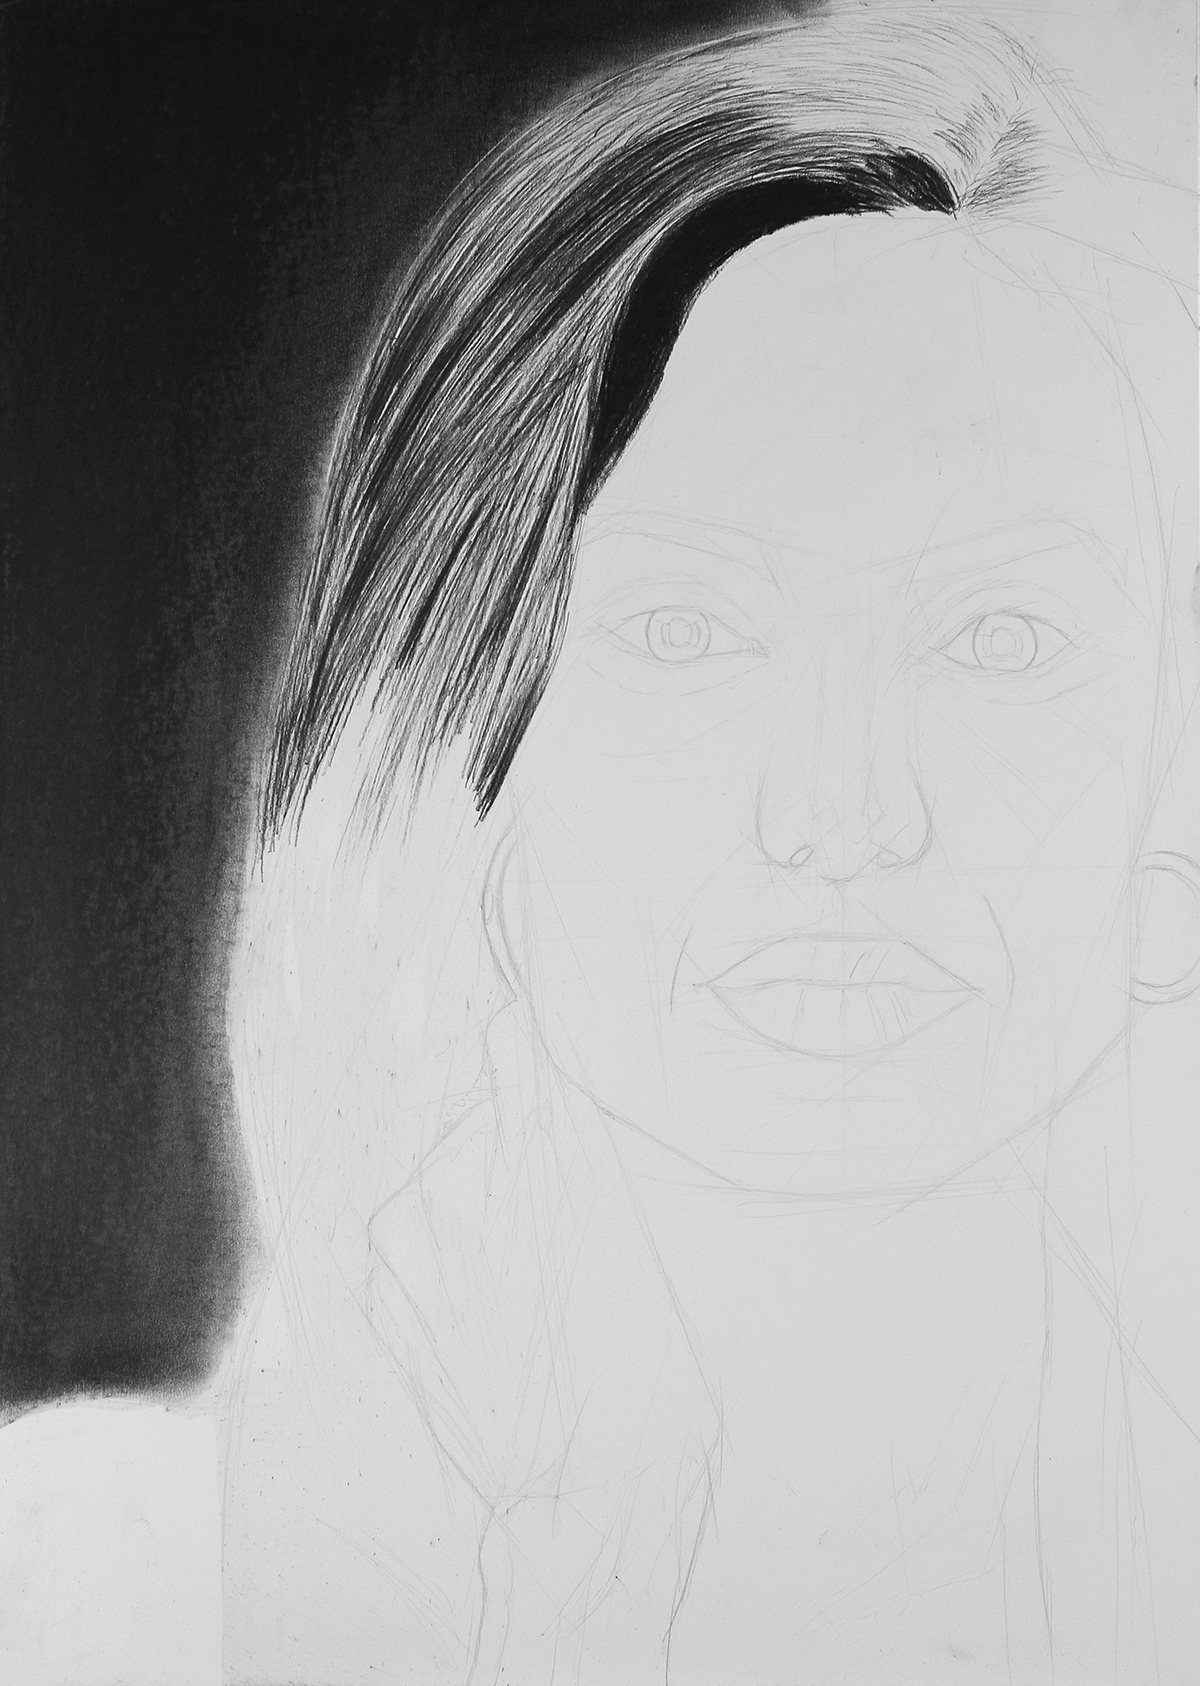 Angelina Jolie charcoal pencil draw hyperrealism Carboncino matita disegno illustrazione iperrealismo RITRATTO portrait